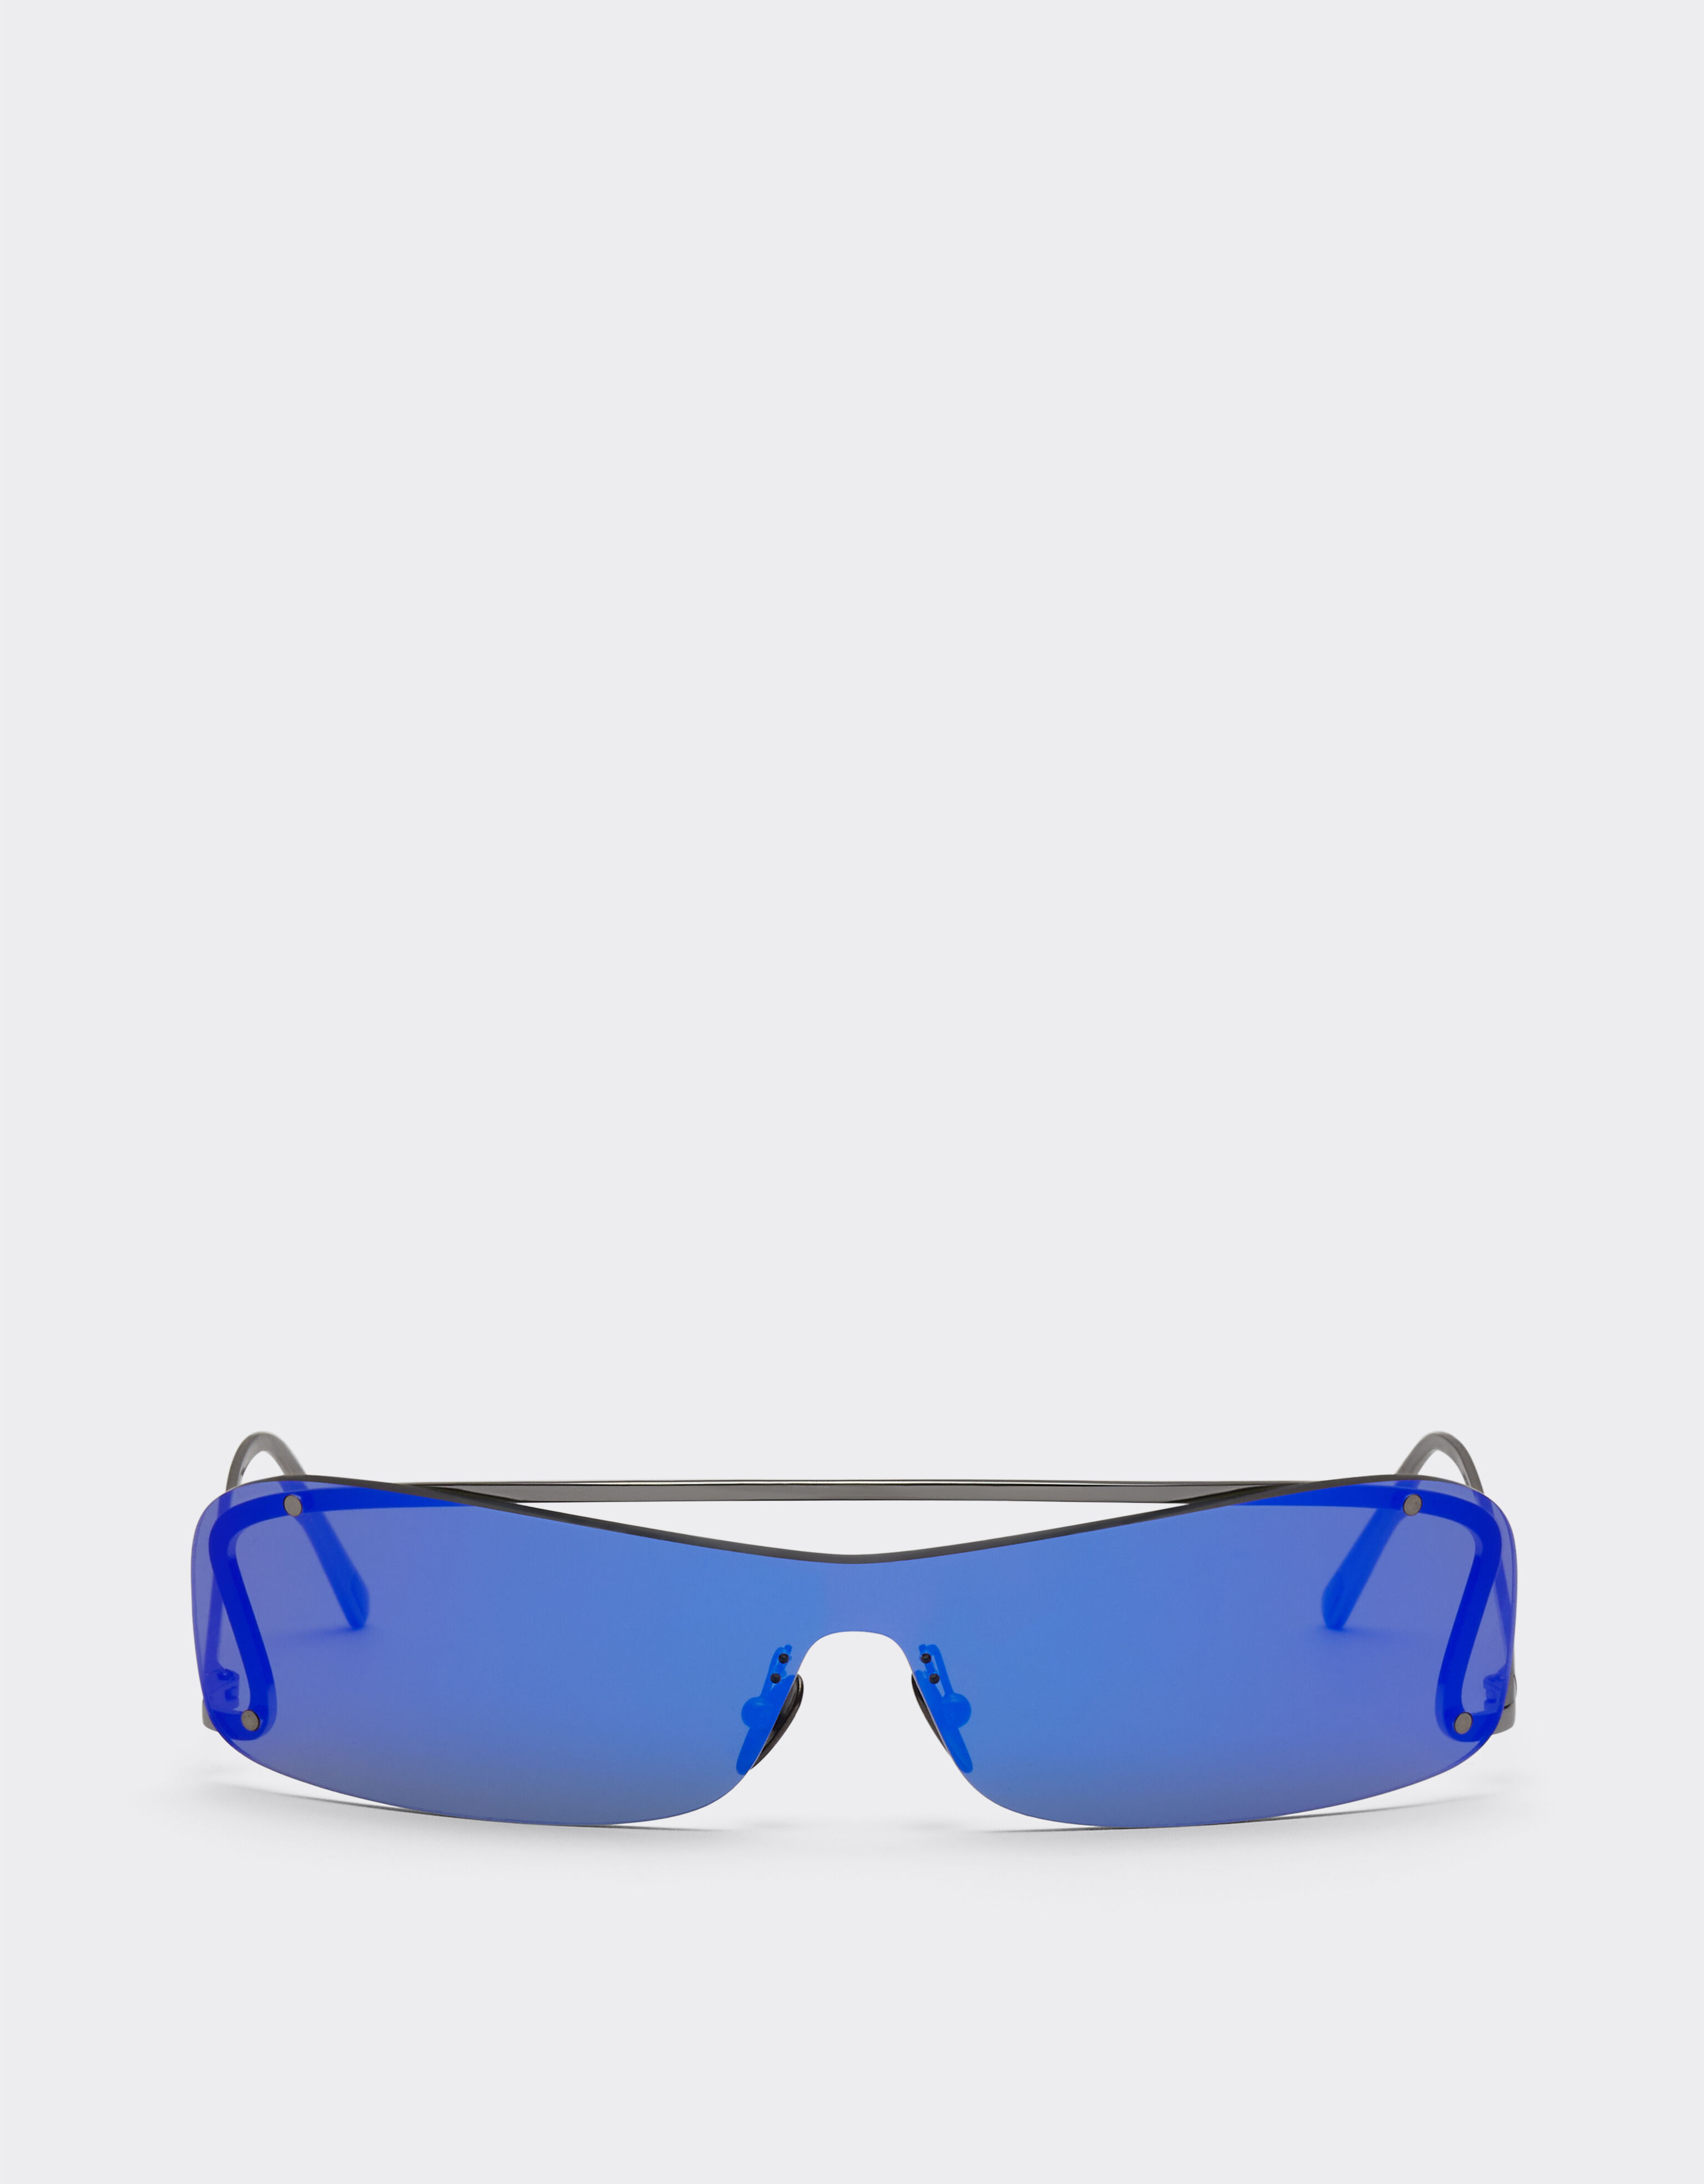 ${brand} Lunettes de soleil Ferrari avec verres miroir gris foncé/bleus ${colorDescription} ${masterID}